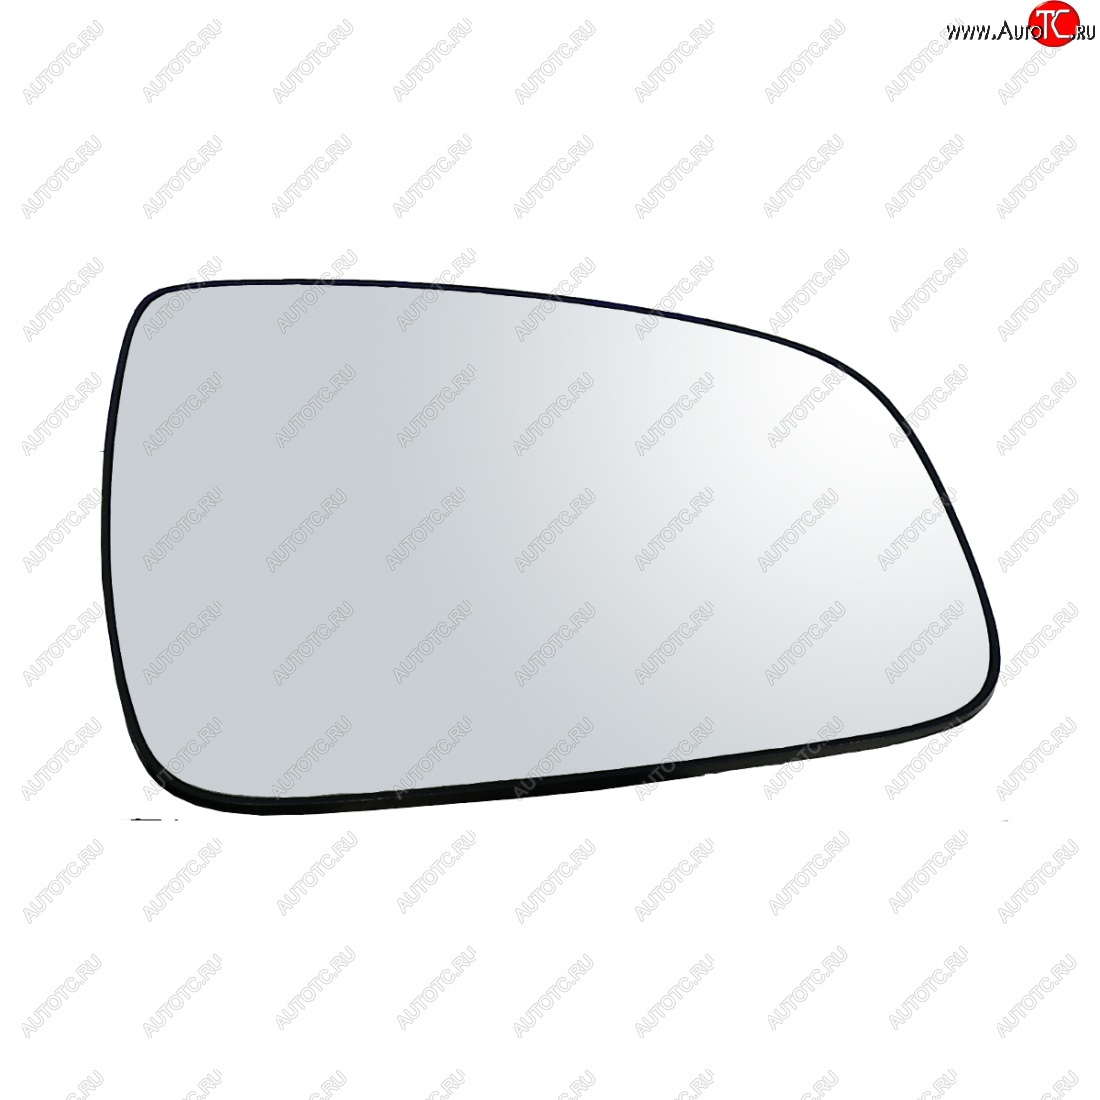 289 р. Правое зеркальное полотно AutoBlik2 Renault Sandero (BS) (2009-2014) (без антибликового покрытия)